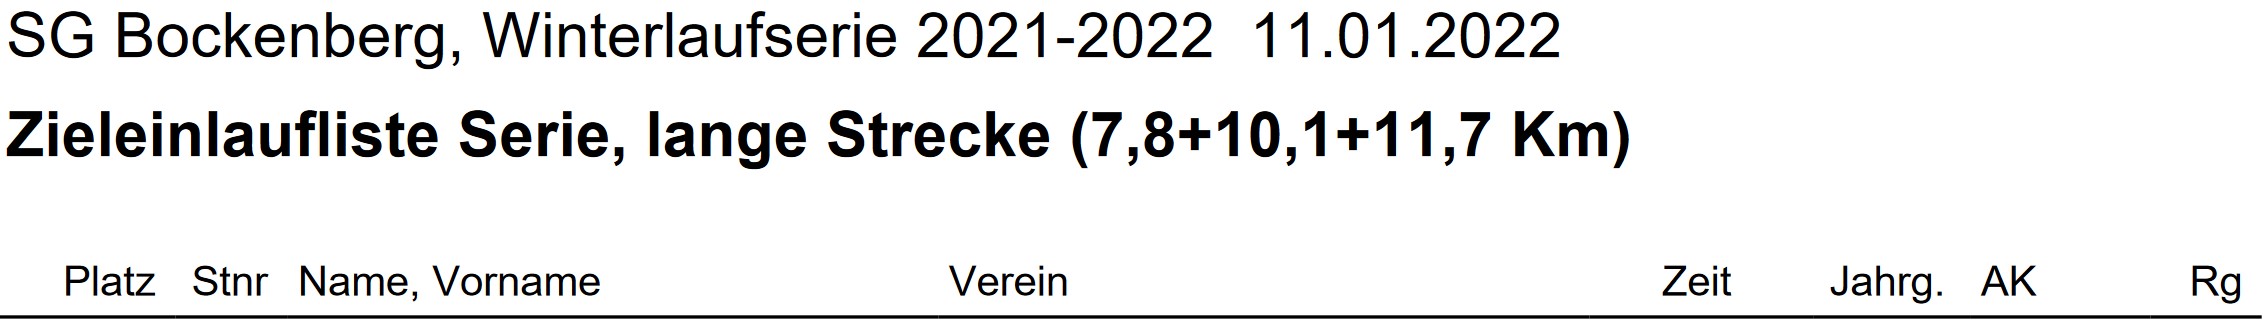 Bockenberg 2021 Gesamt Ergebnis Teil1